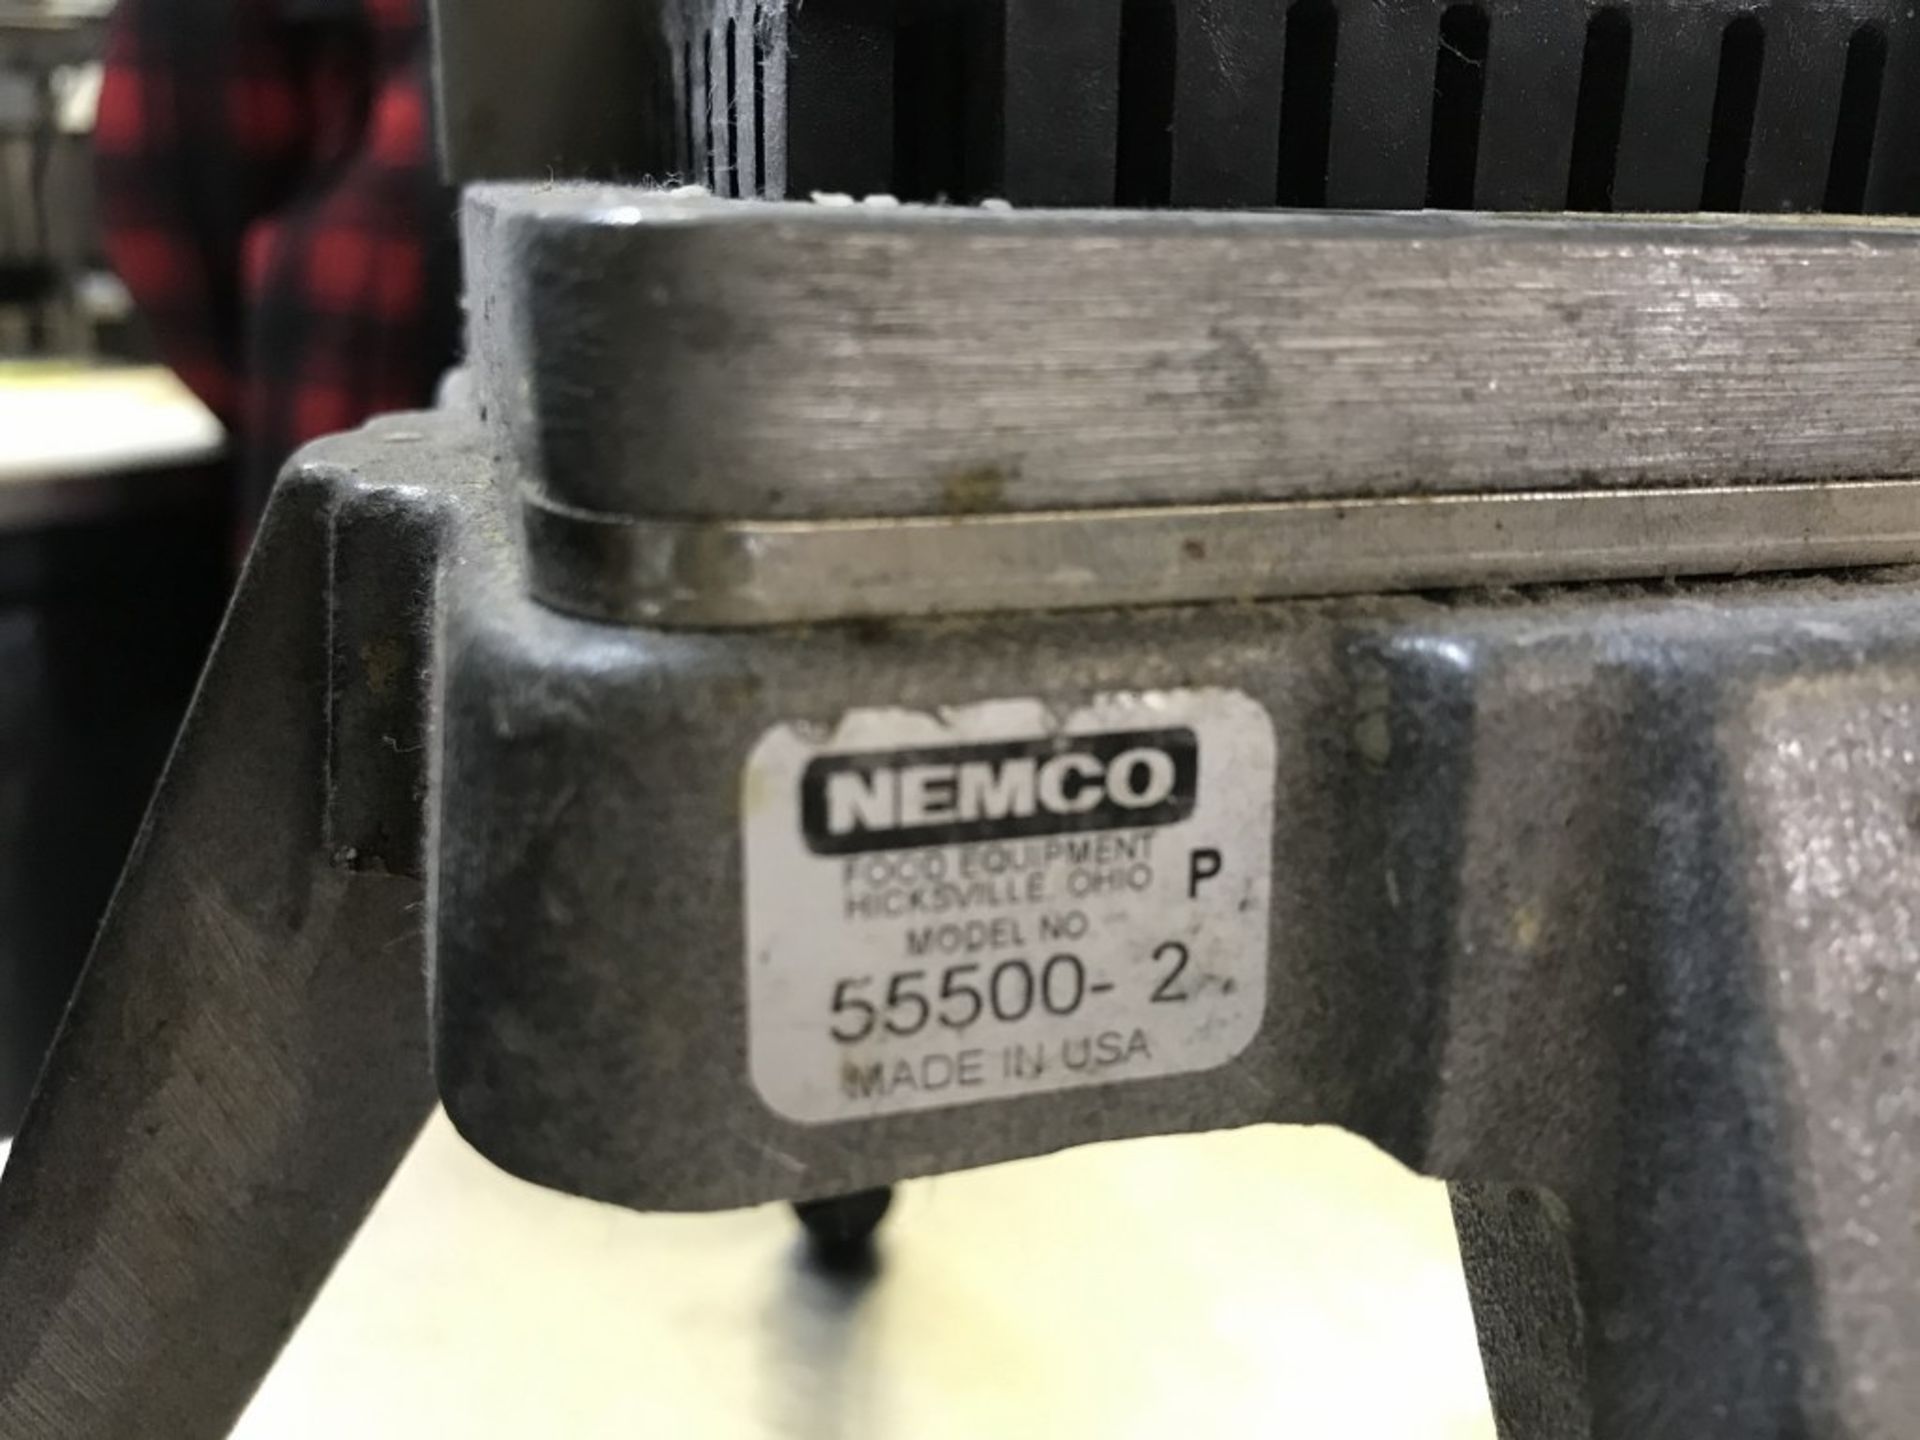 NEMCO -1/4" EASY VEGETABLE DICER - MODEL # 55500 - Image 3 of 3